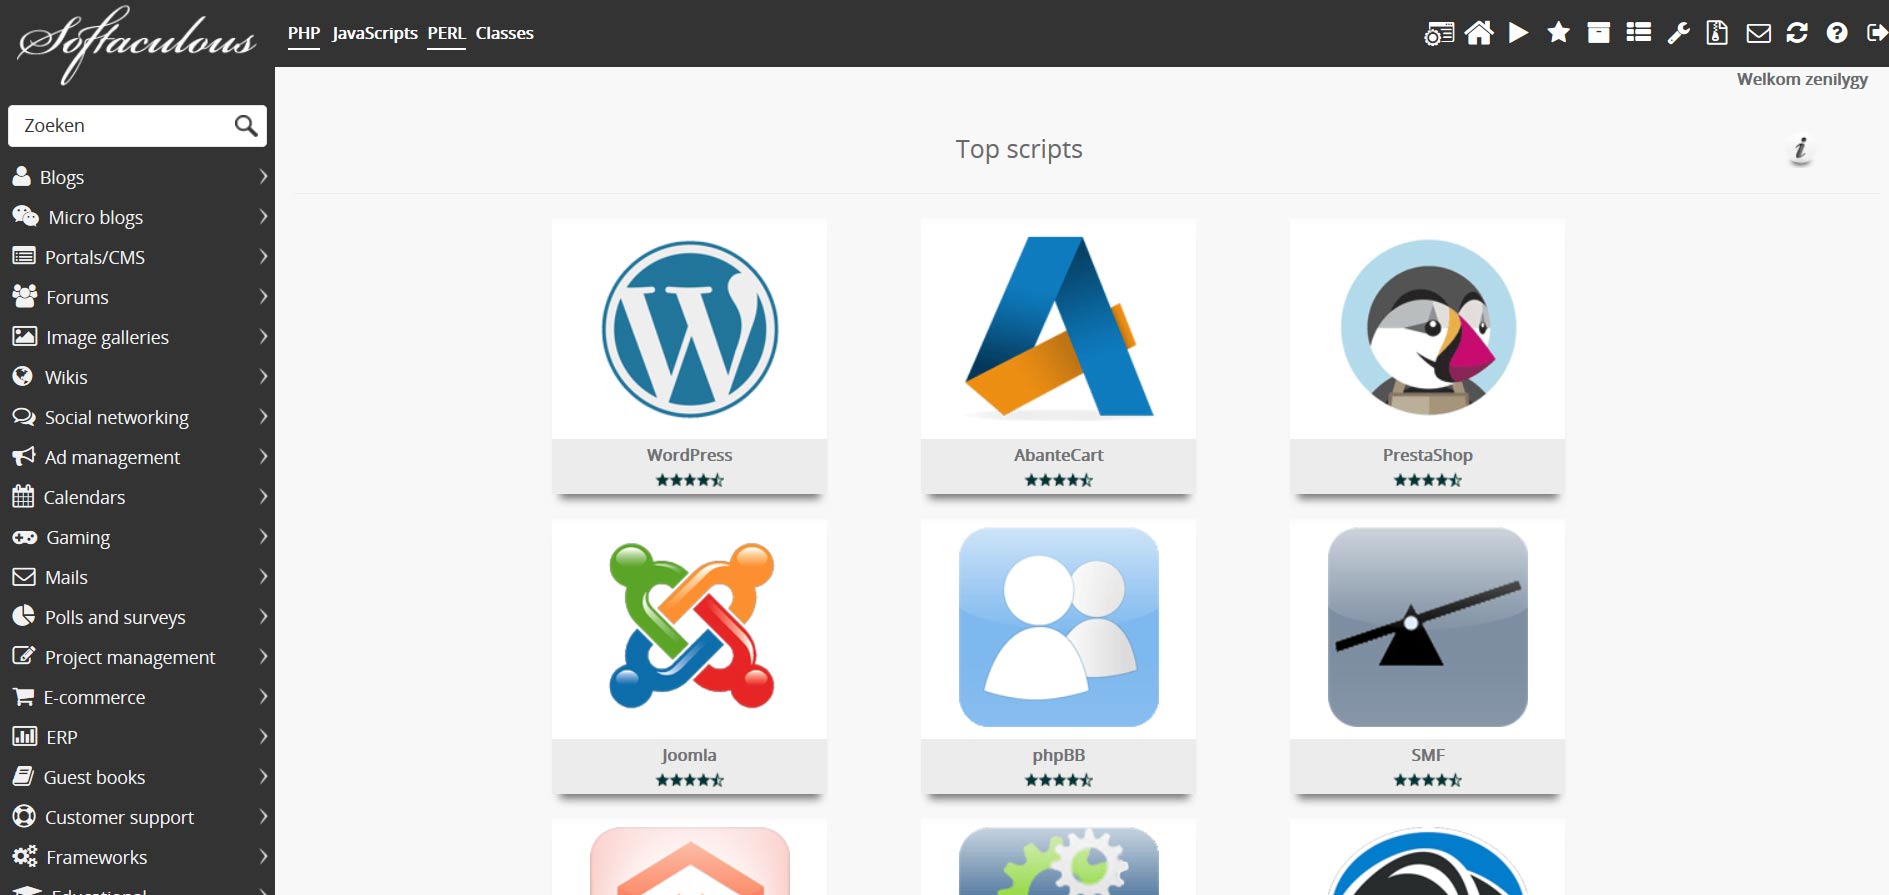 Joomla installeren, Drupal installeren en het installeren van WordPress in 1 klik